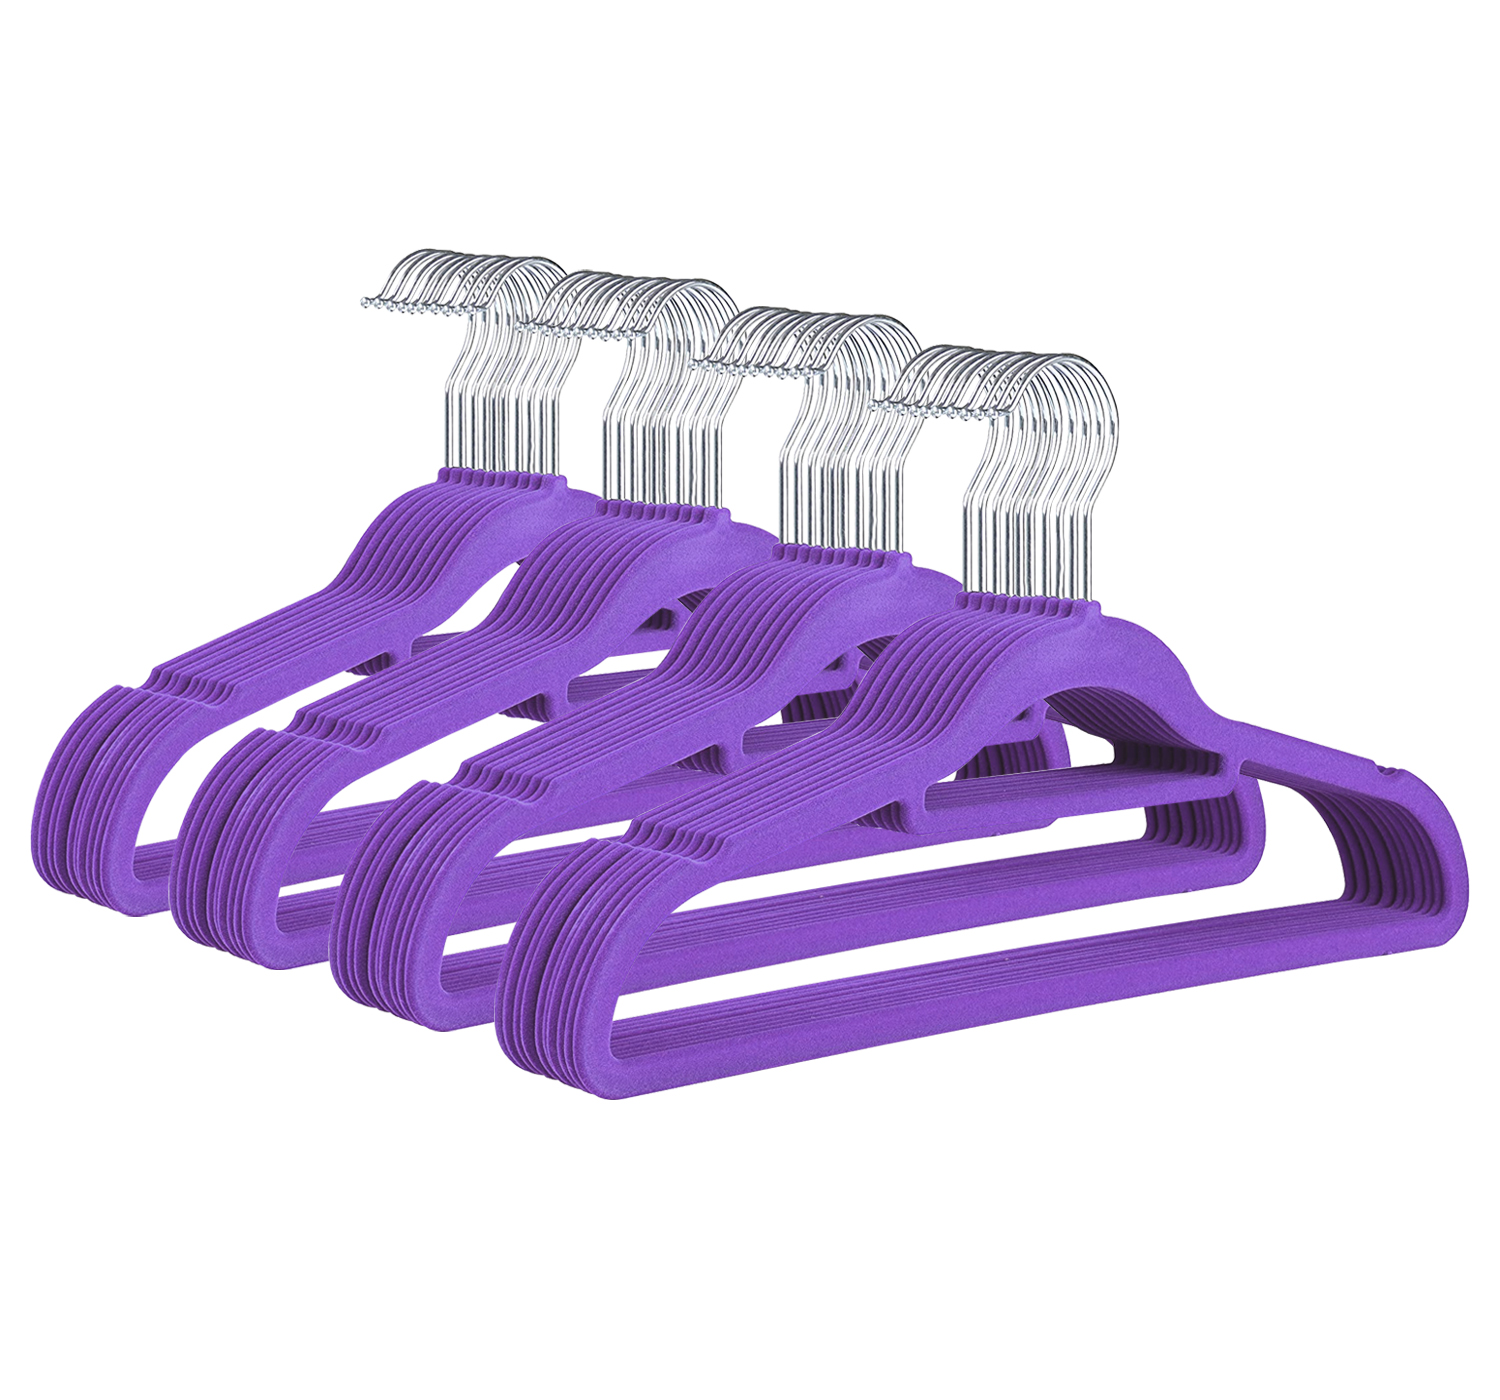 Pack of 40 Purple Luxury Non Slip Flocked Velvet Hangers